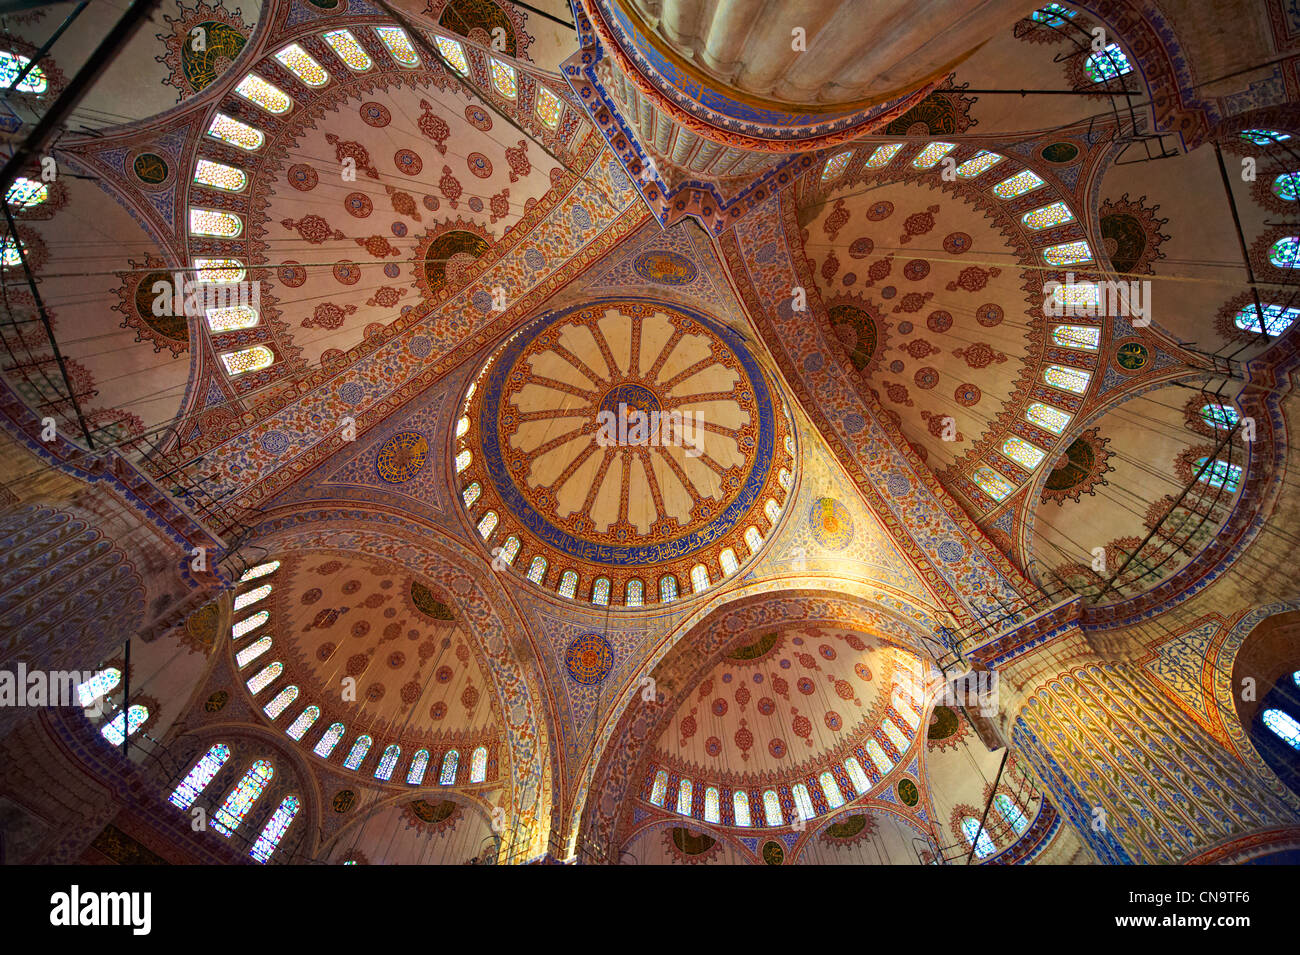 Intérieur de la Mosquée Sultan Ahmed (Sultanahmet Camii) ou Mosquée Bleue, Istanbul, Turquie. Construit de 1609 à 1616 Banque D'Images